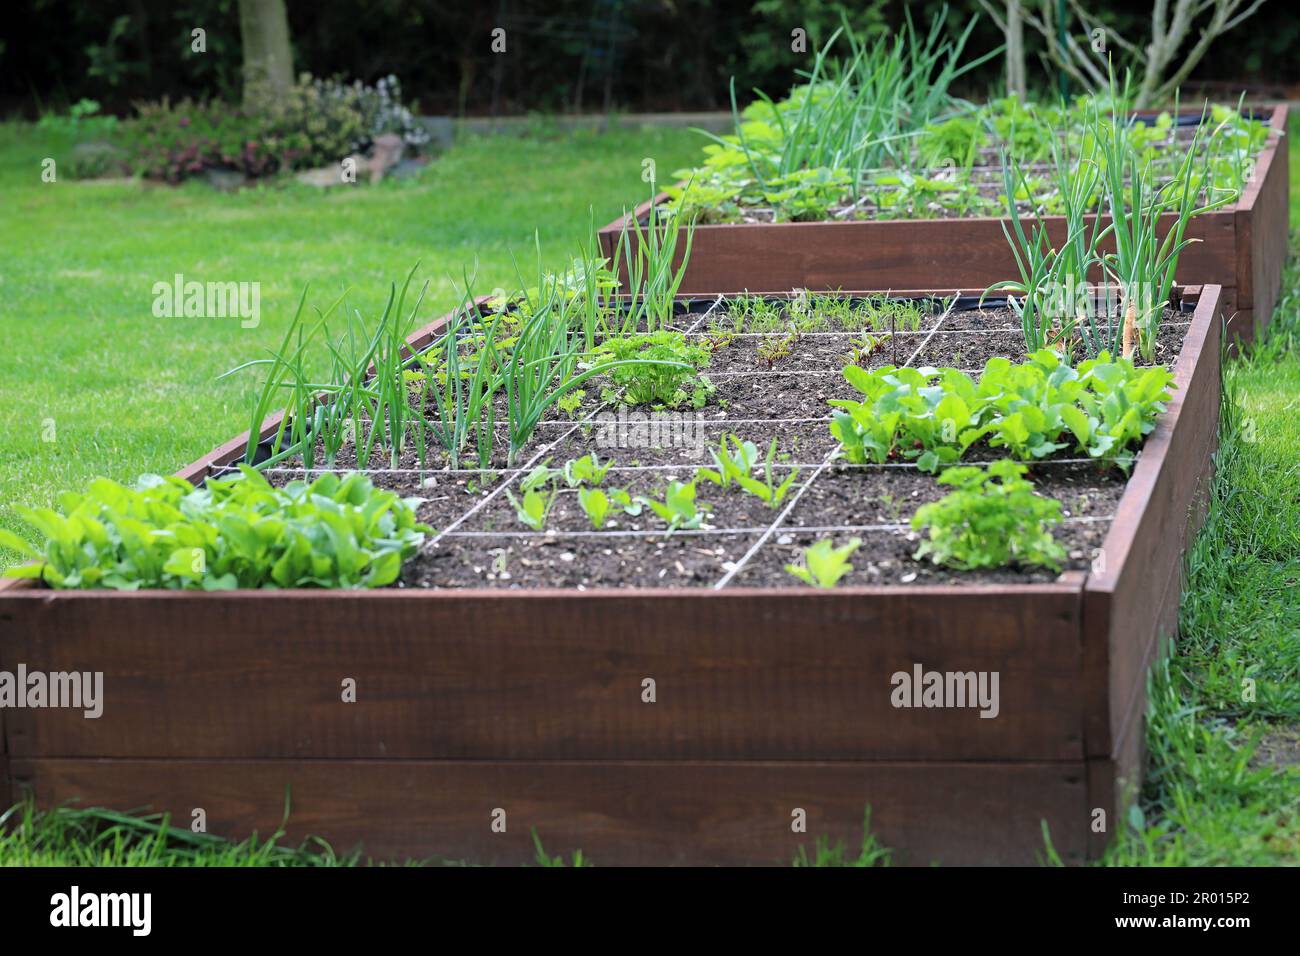 Hochbeete in einem städtischen Garten, in dem Pflanzen Kräuter, Gewürze und Gemüse wachsen. Stockfoto